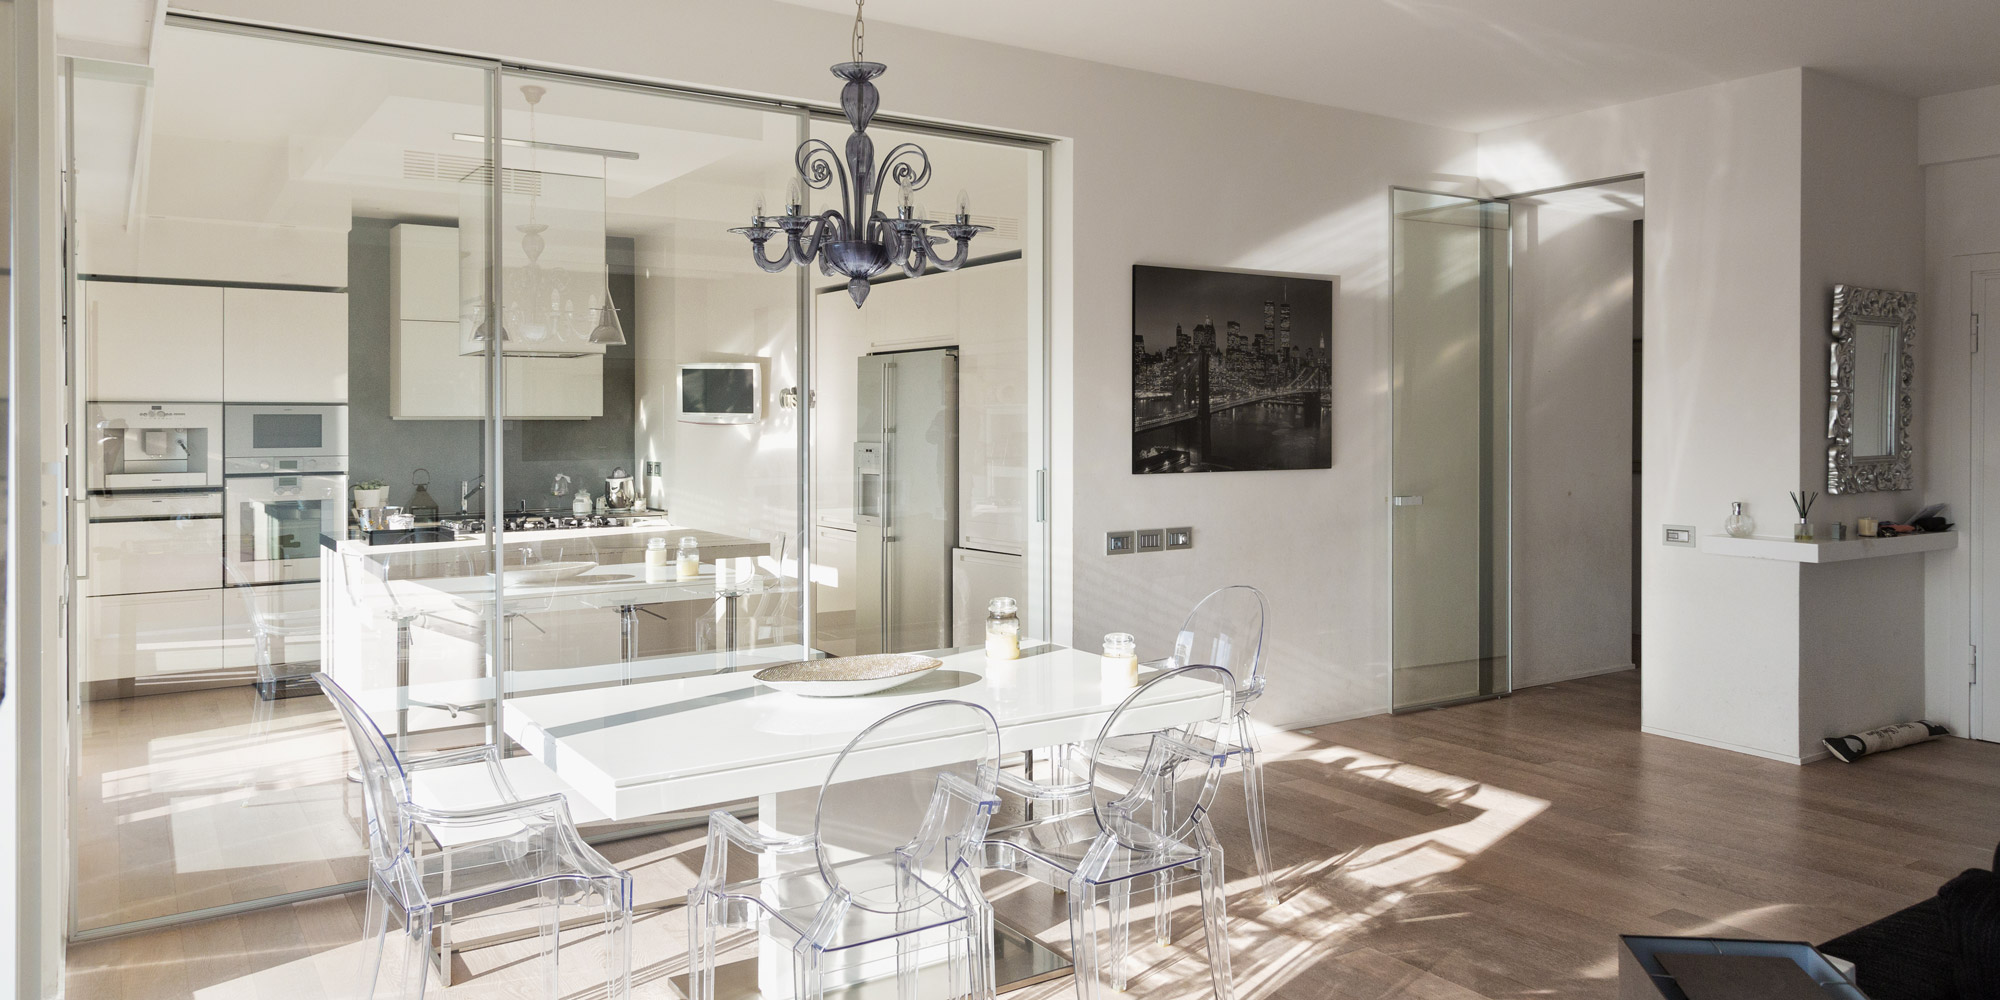 Private Residence in La Spezia - Interior Design - Marco Bonfigli Architect